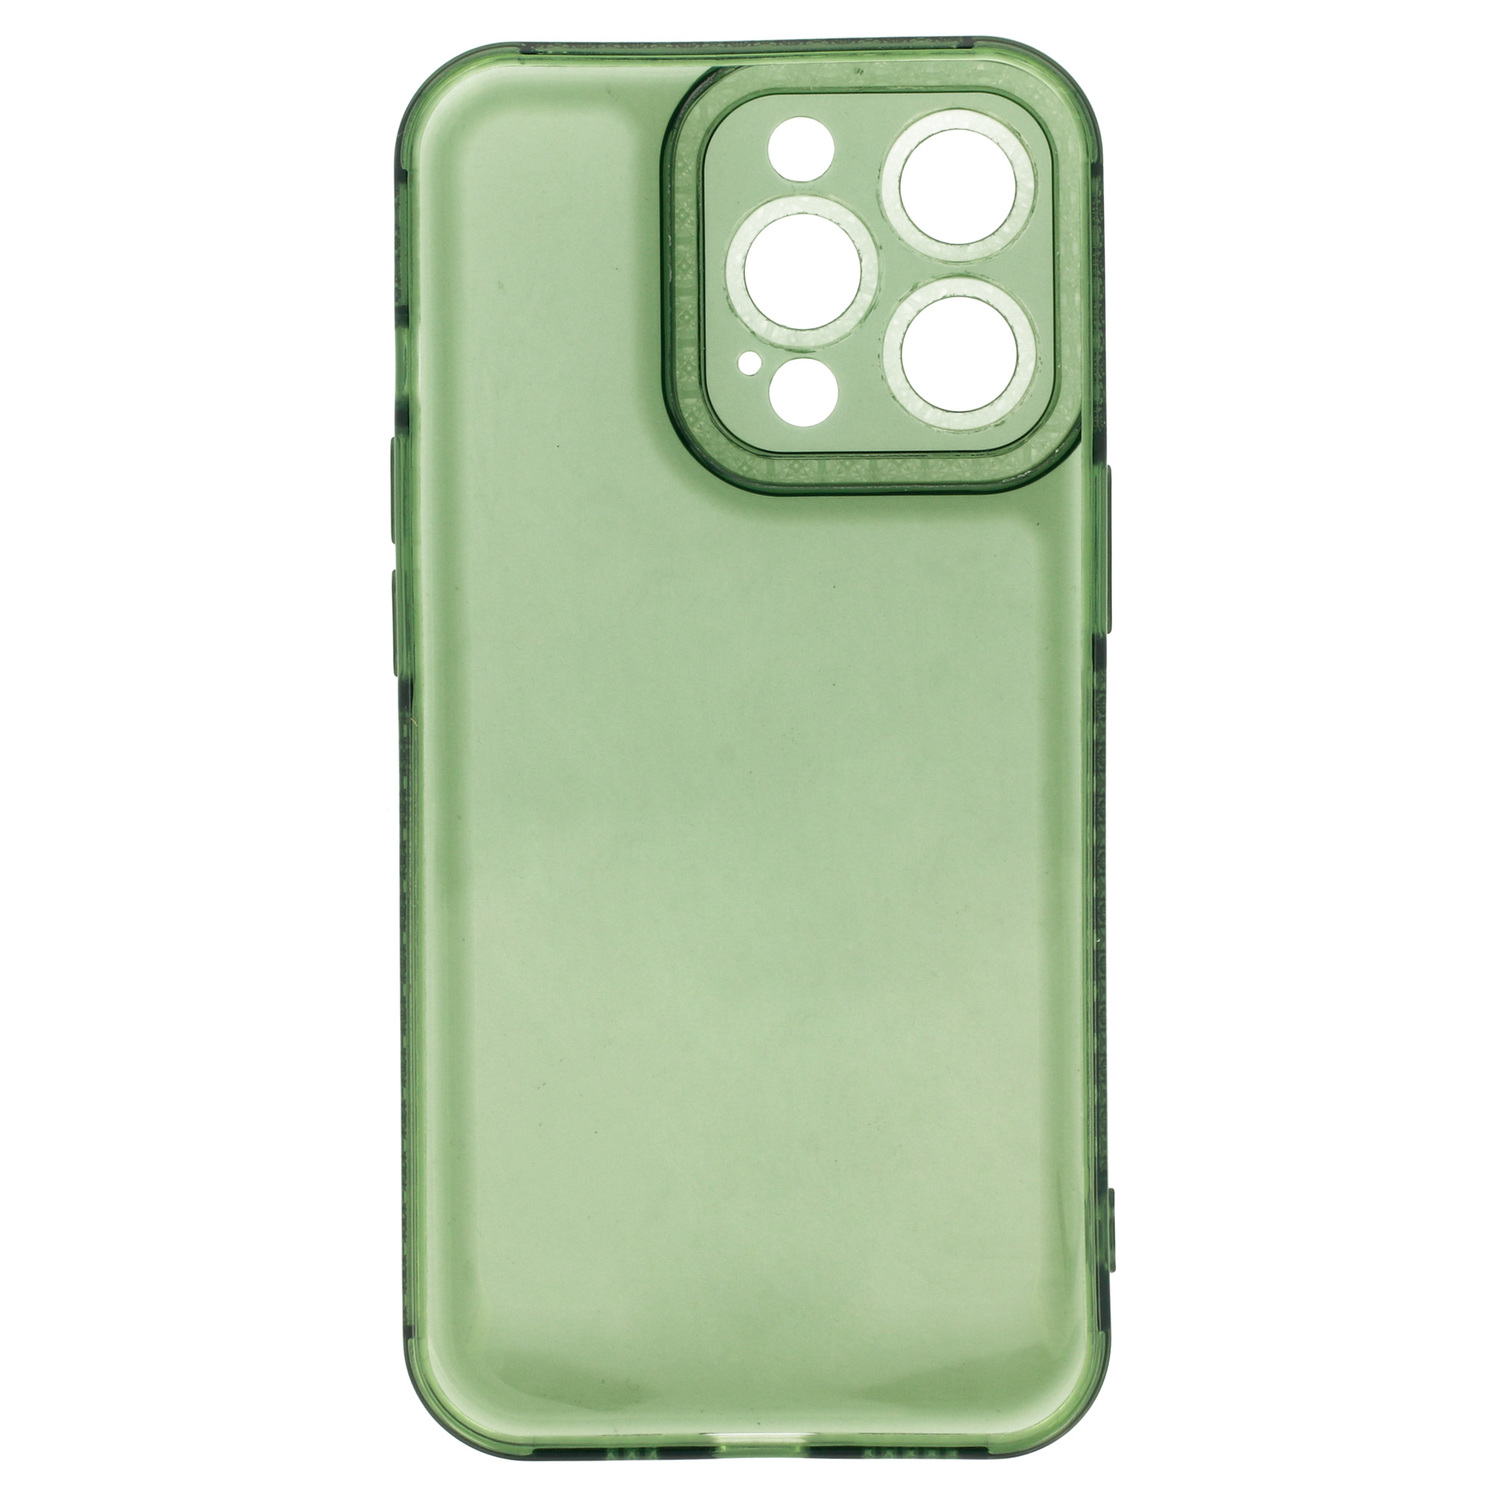 Pokrowiec Crystal Diamond 2mm Case zielony Apple iPhone X / 5